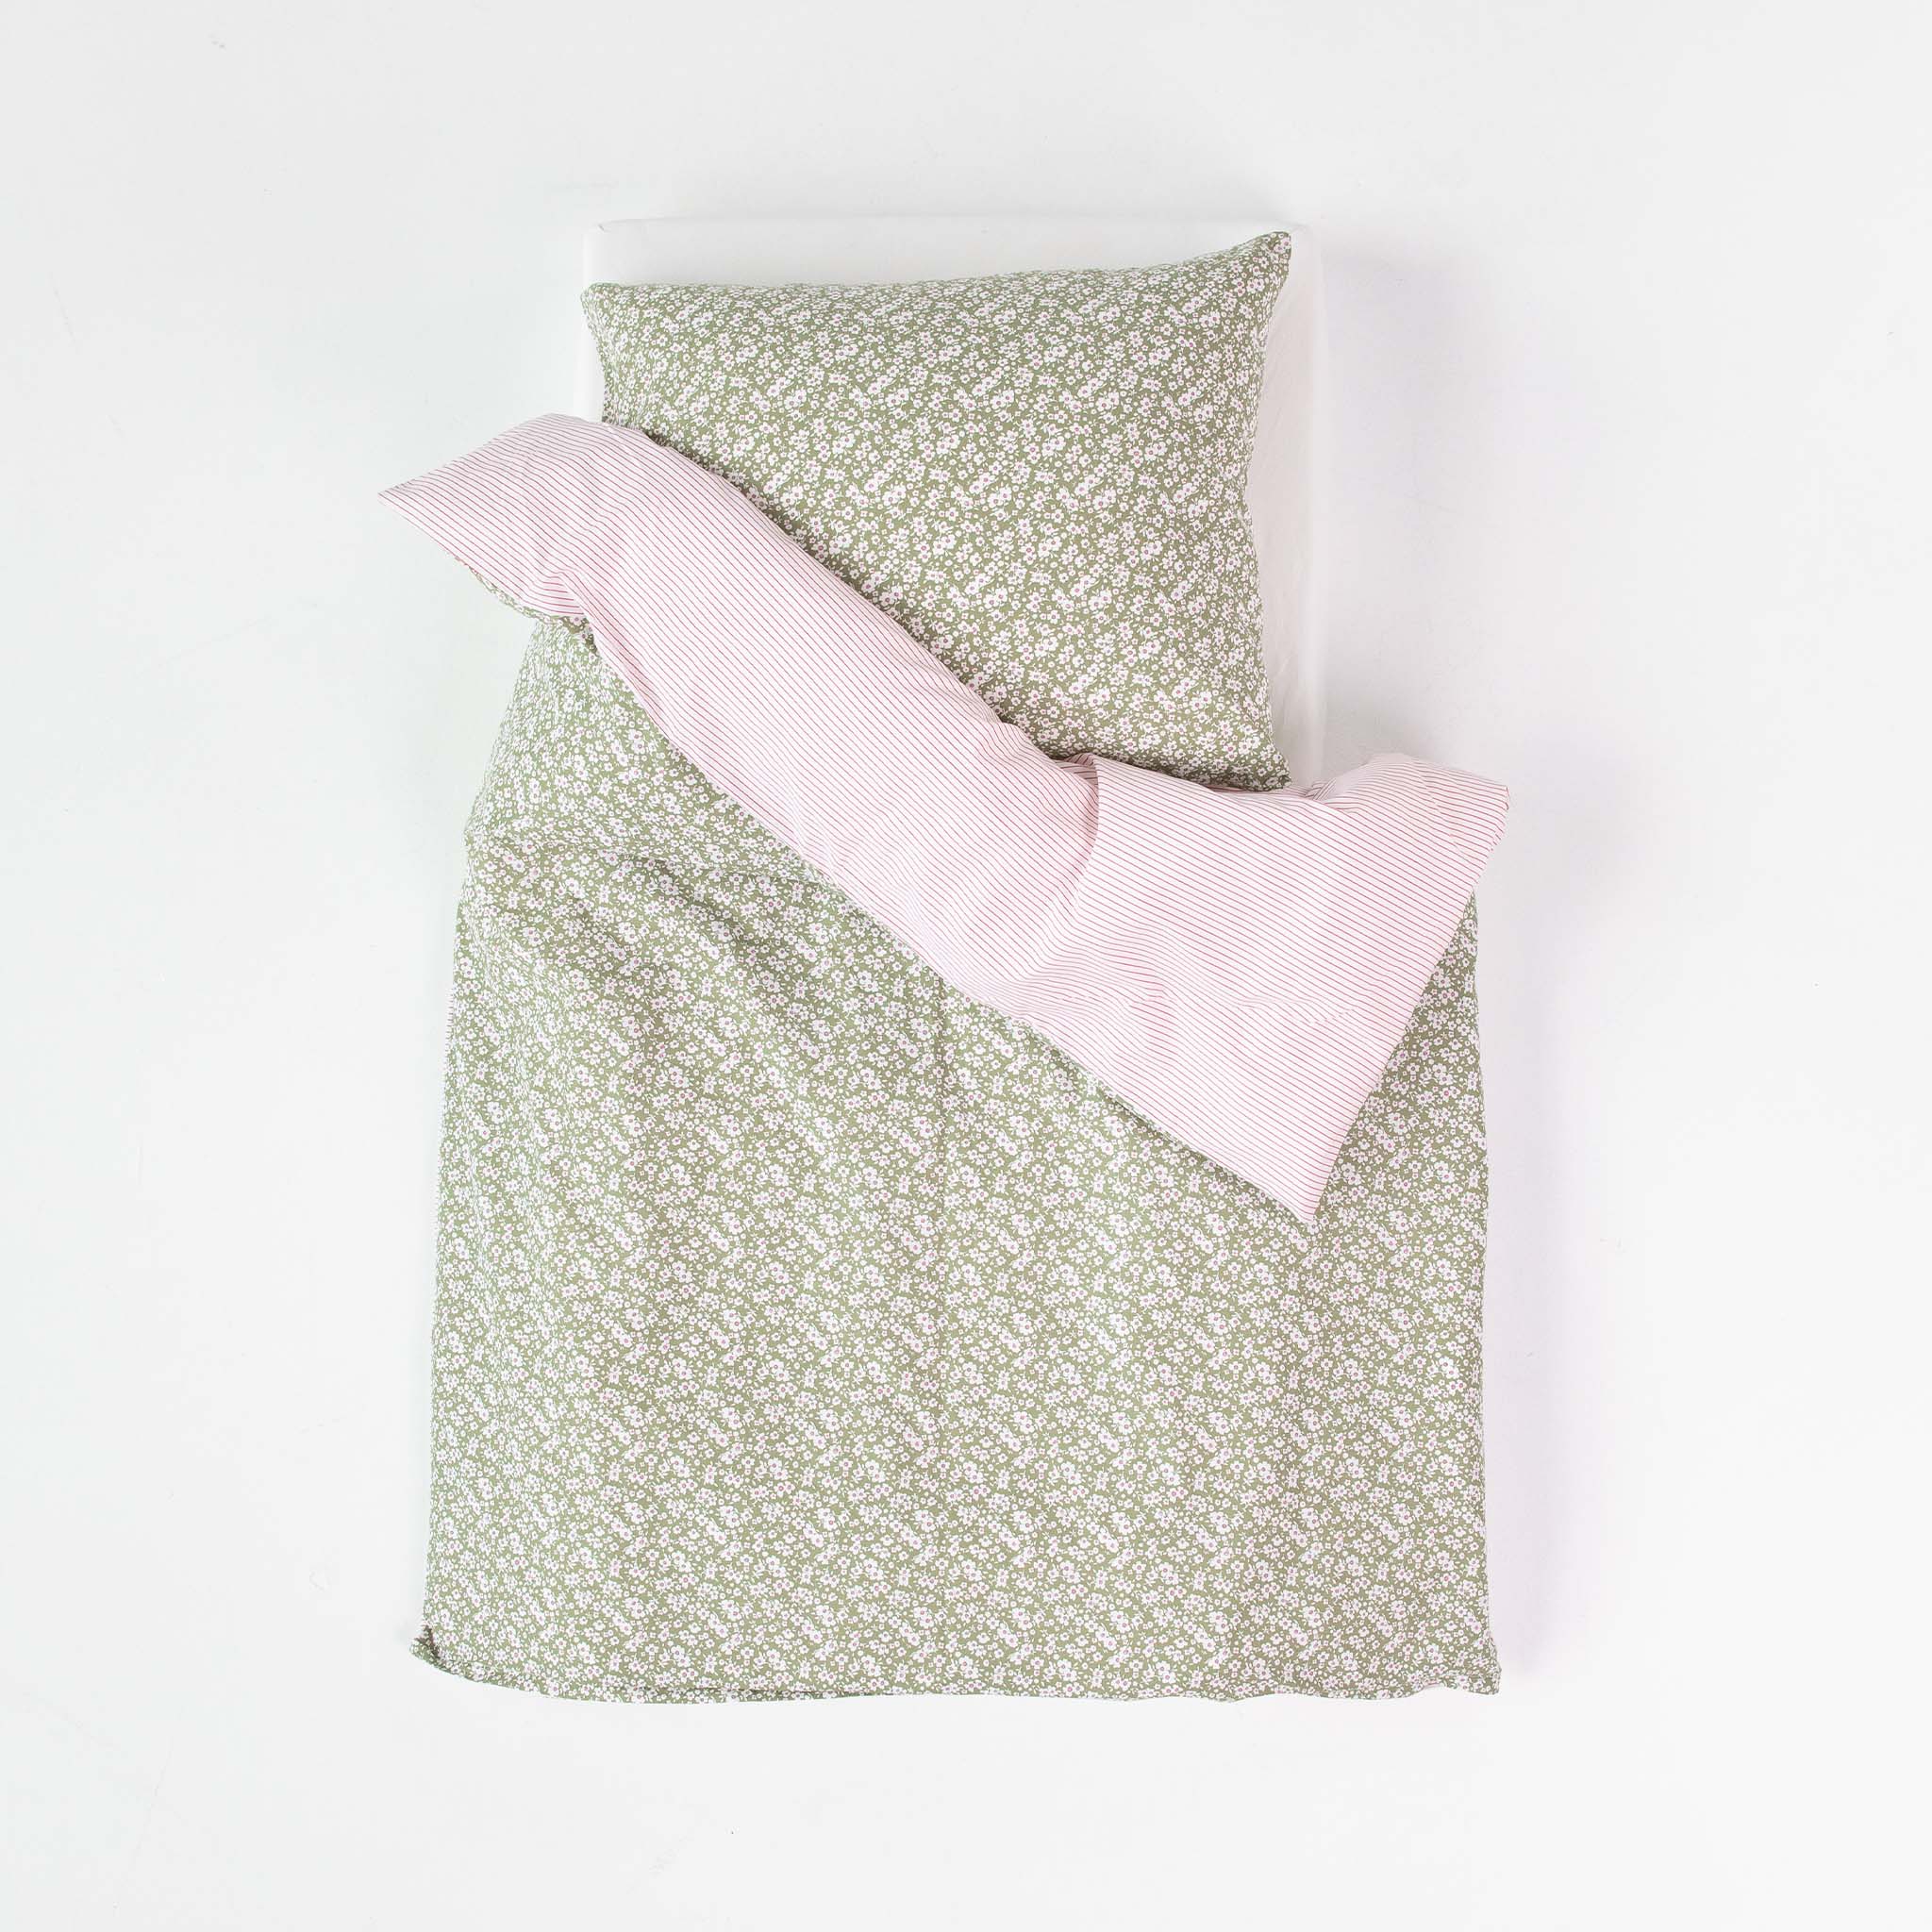 Pillow Case - Flowery Green